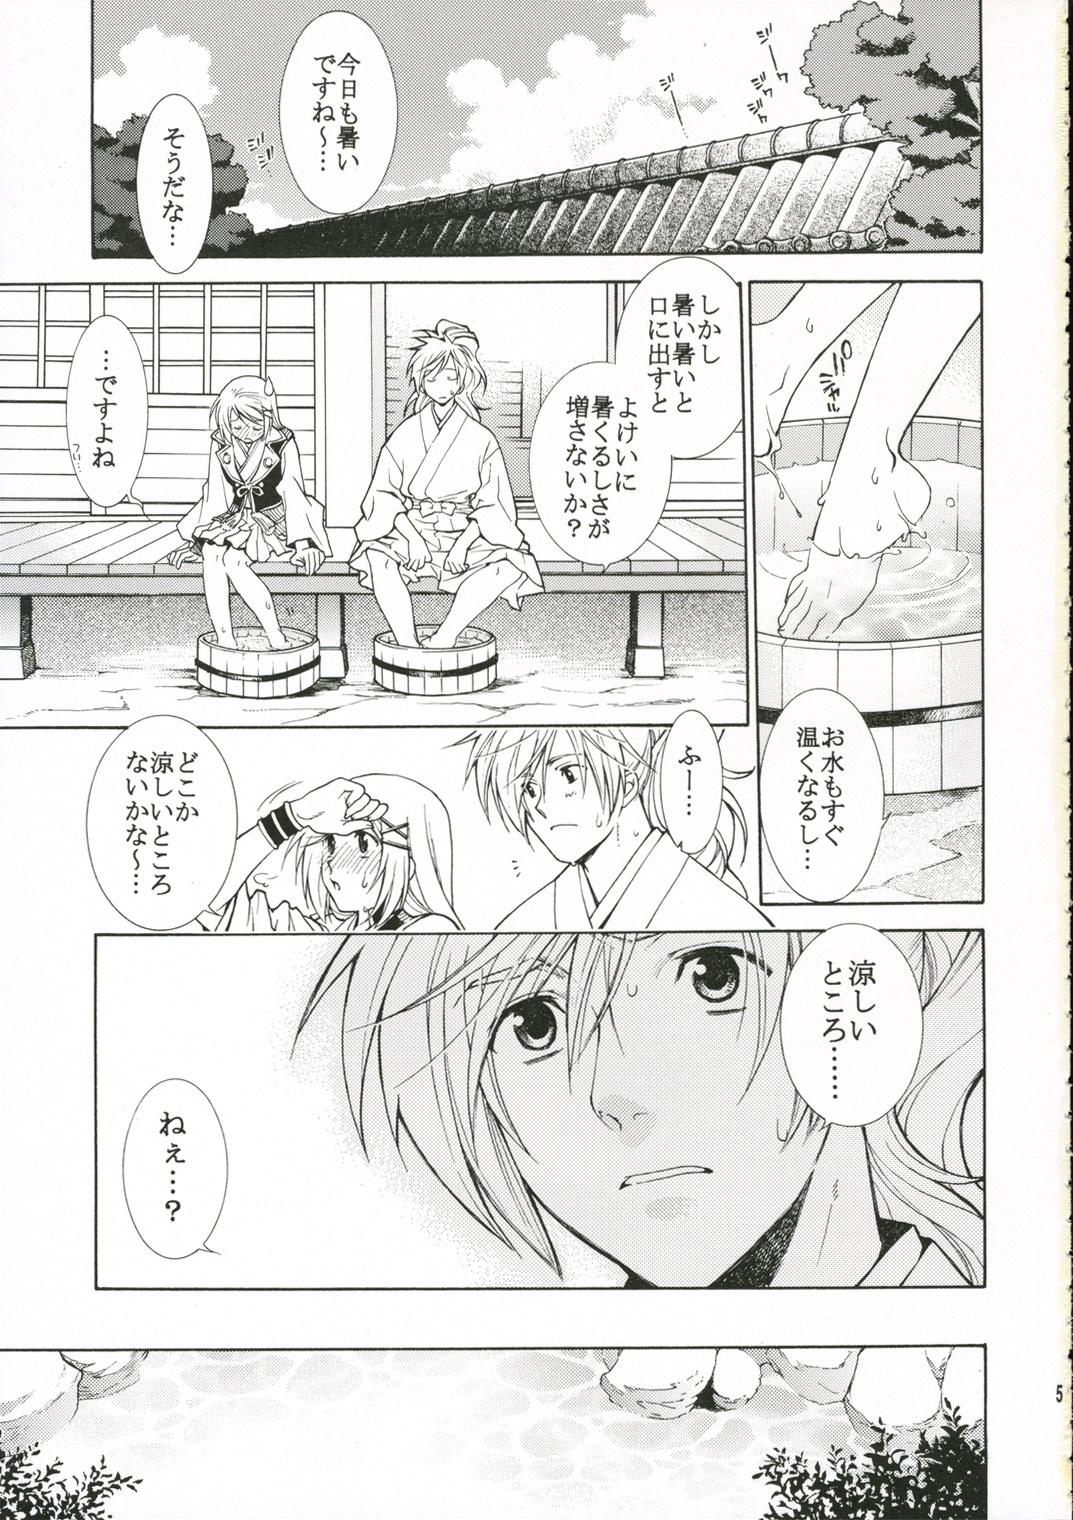 Girl Sucking Dick Hitoyasumi. - Harukanaru toki no naka de Ducha - Page 4